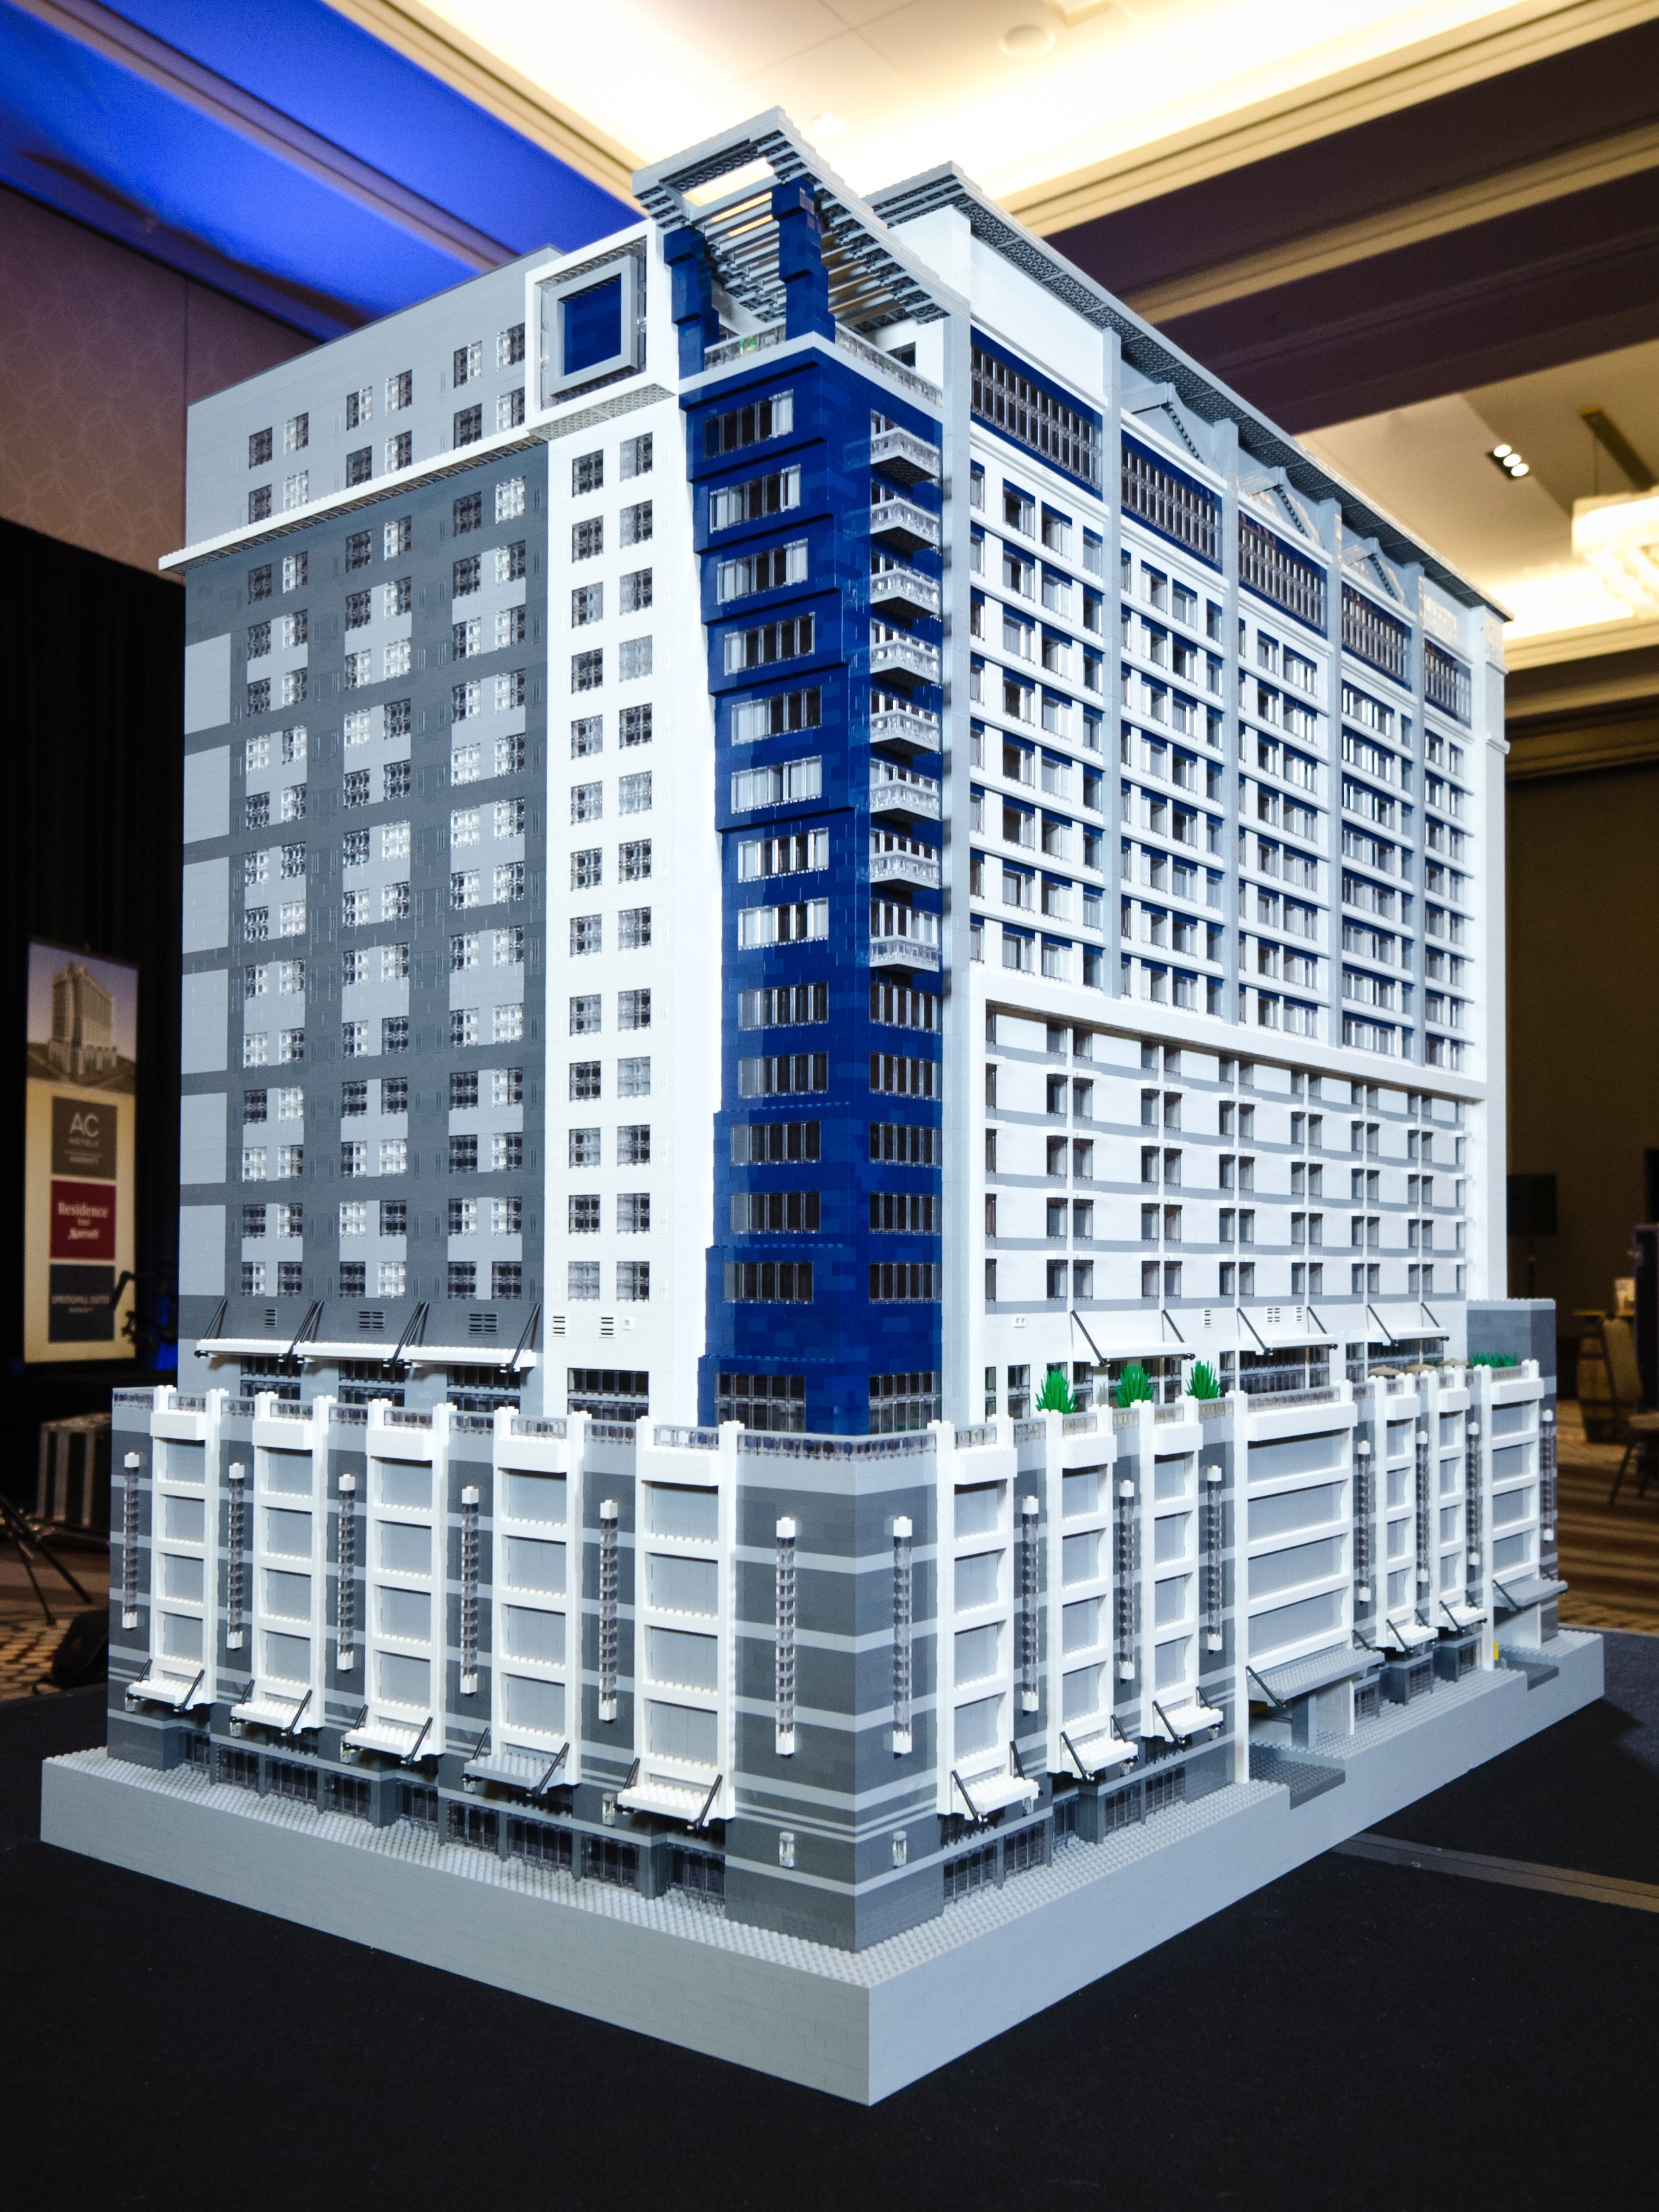 Neues Hotelkonzept als Lego-Modell – Witzige Idee zur Präsentation des ersten Drei-Marken-Konzepts von Marriott